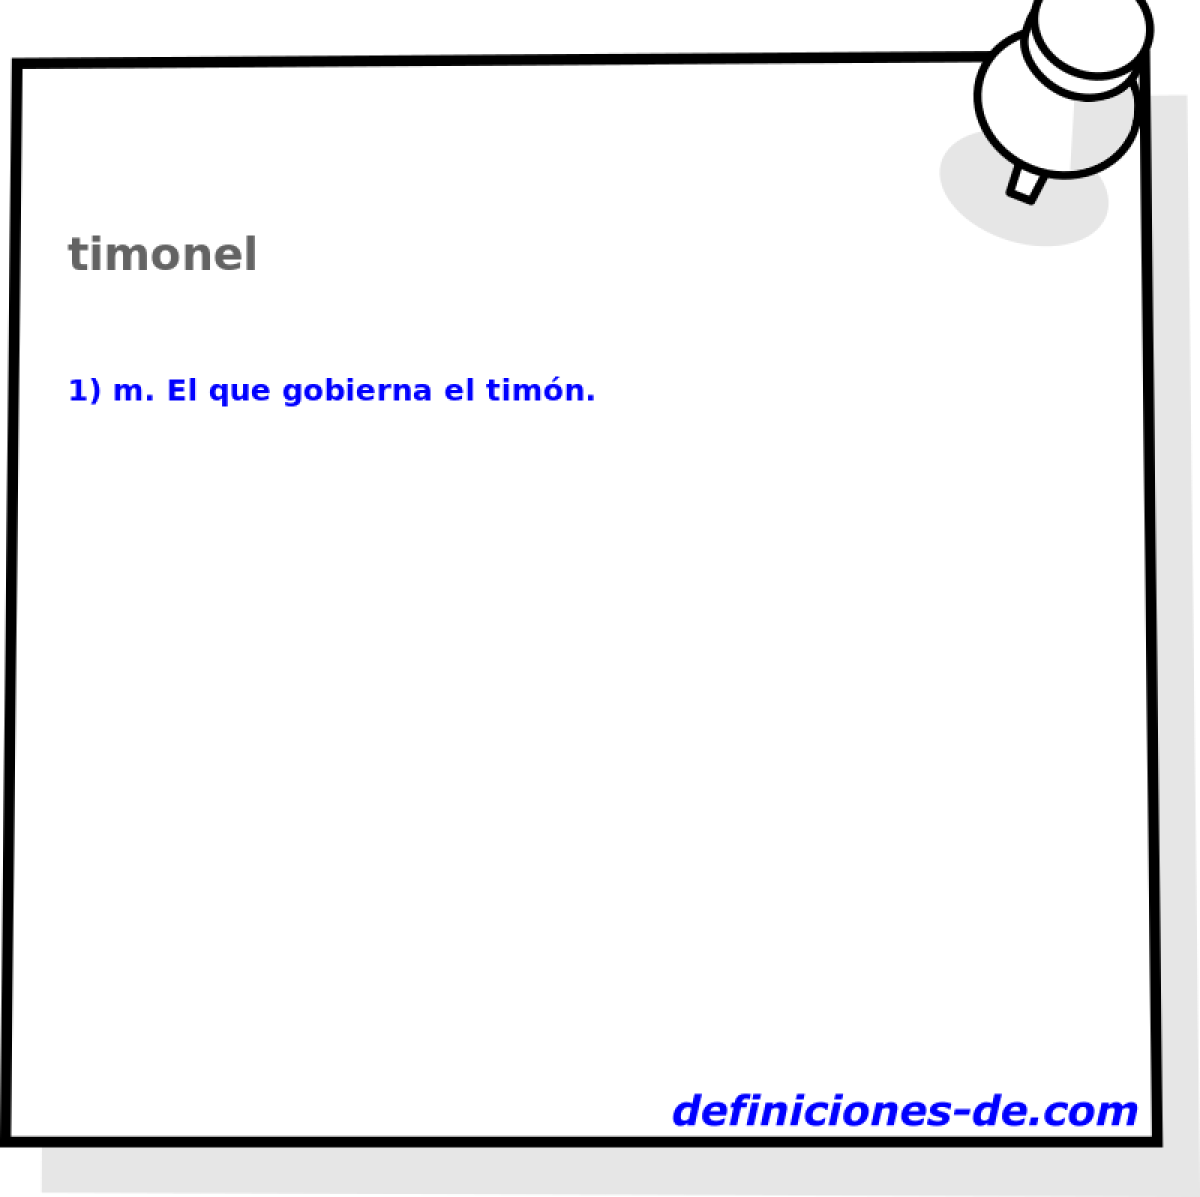 timonel 